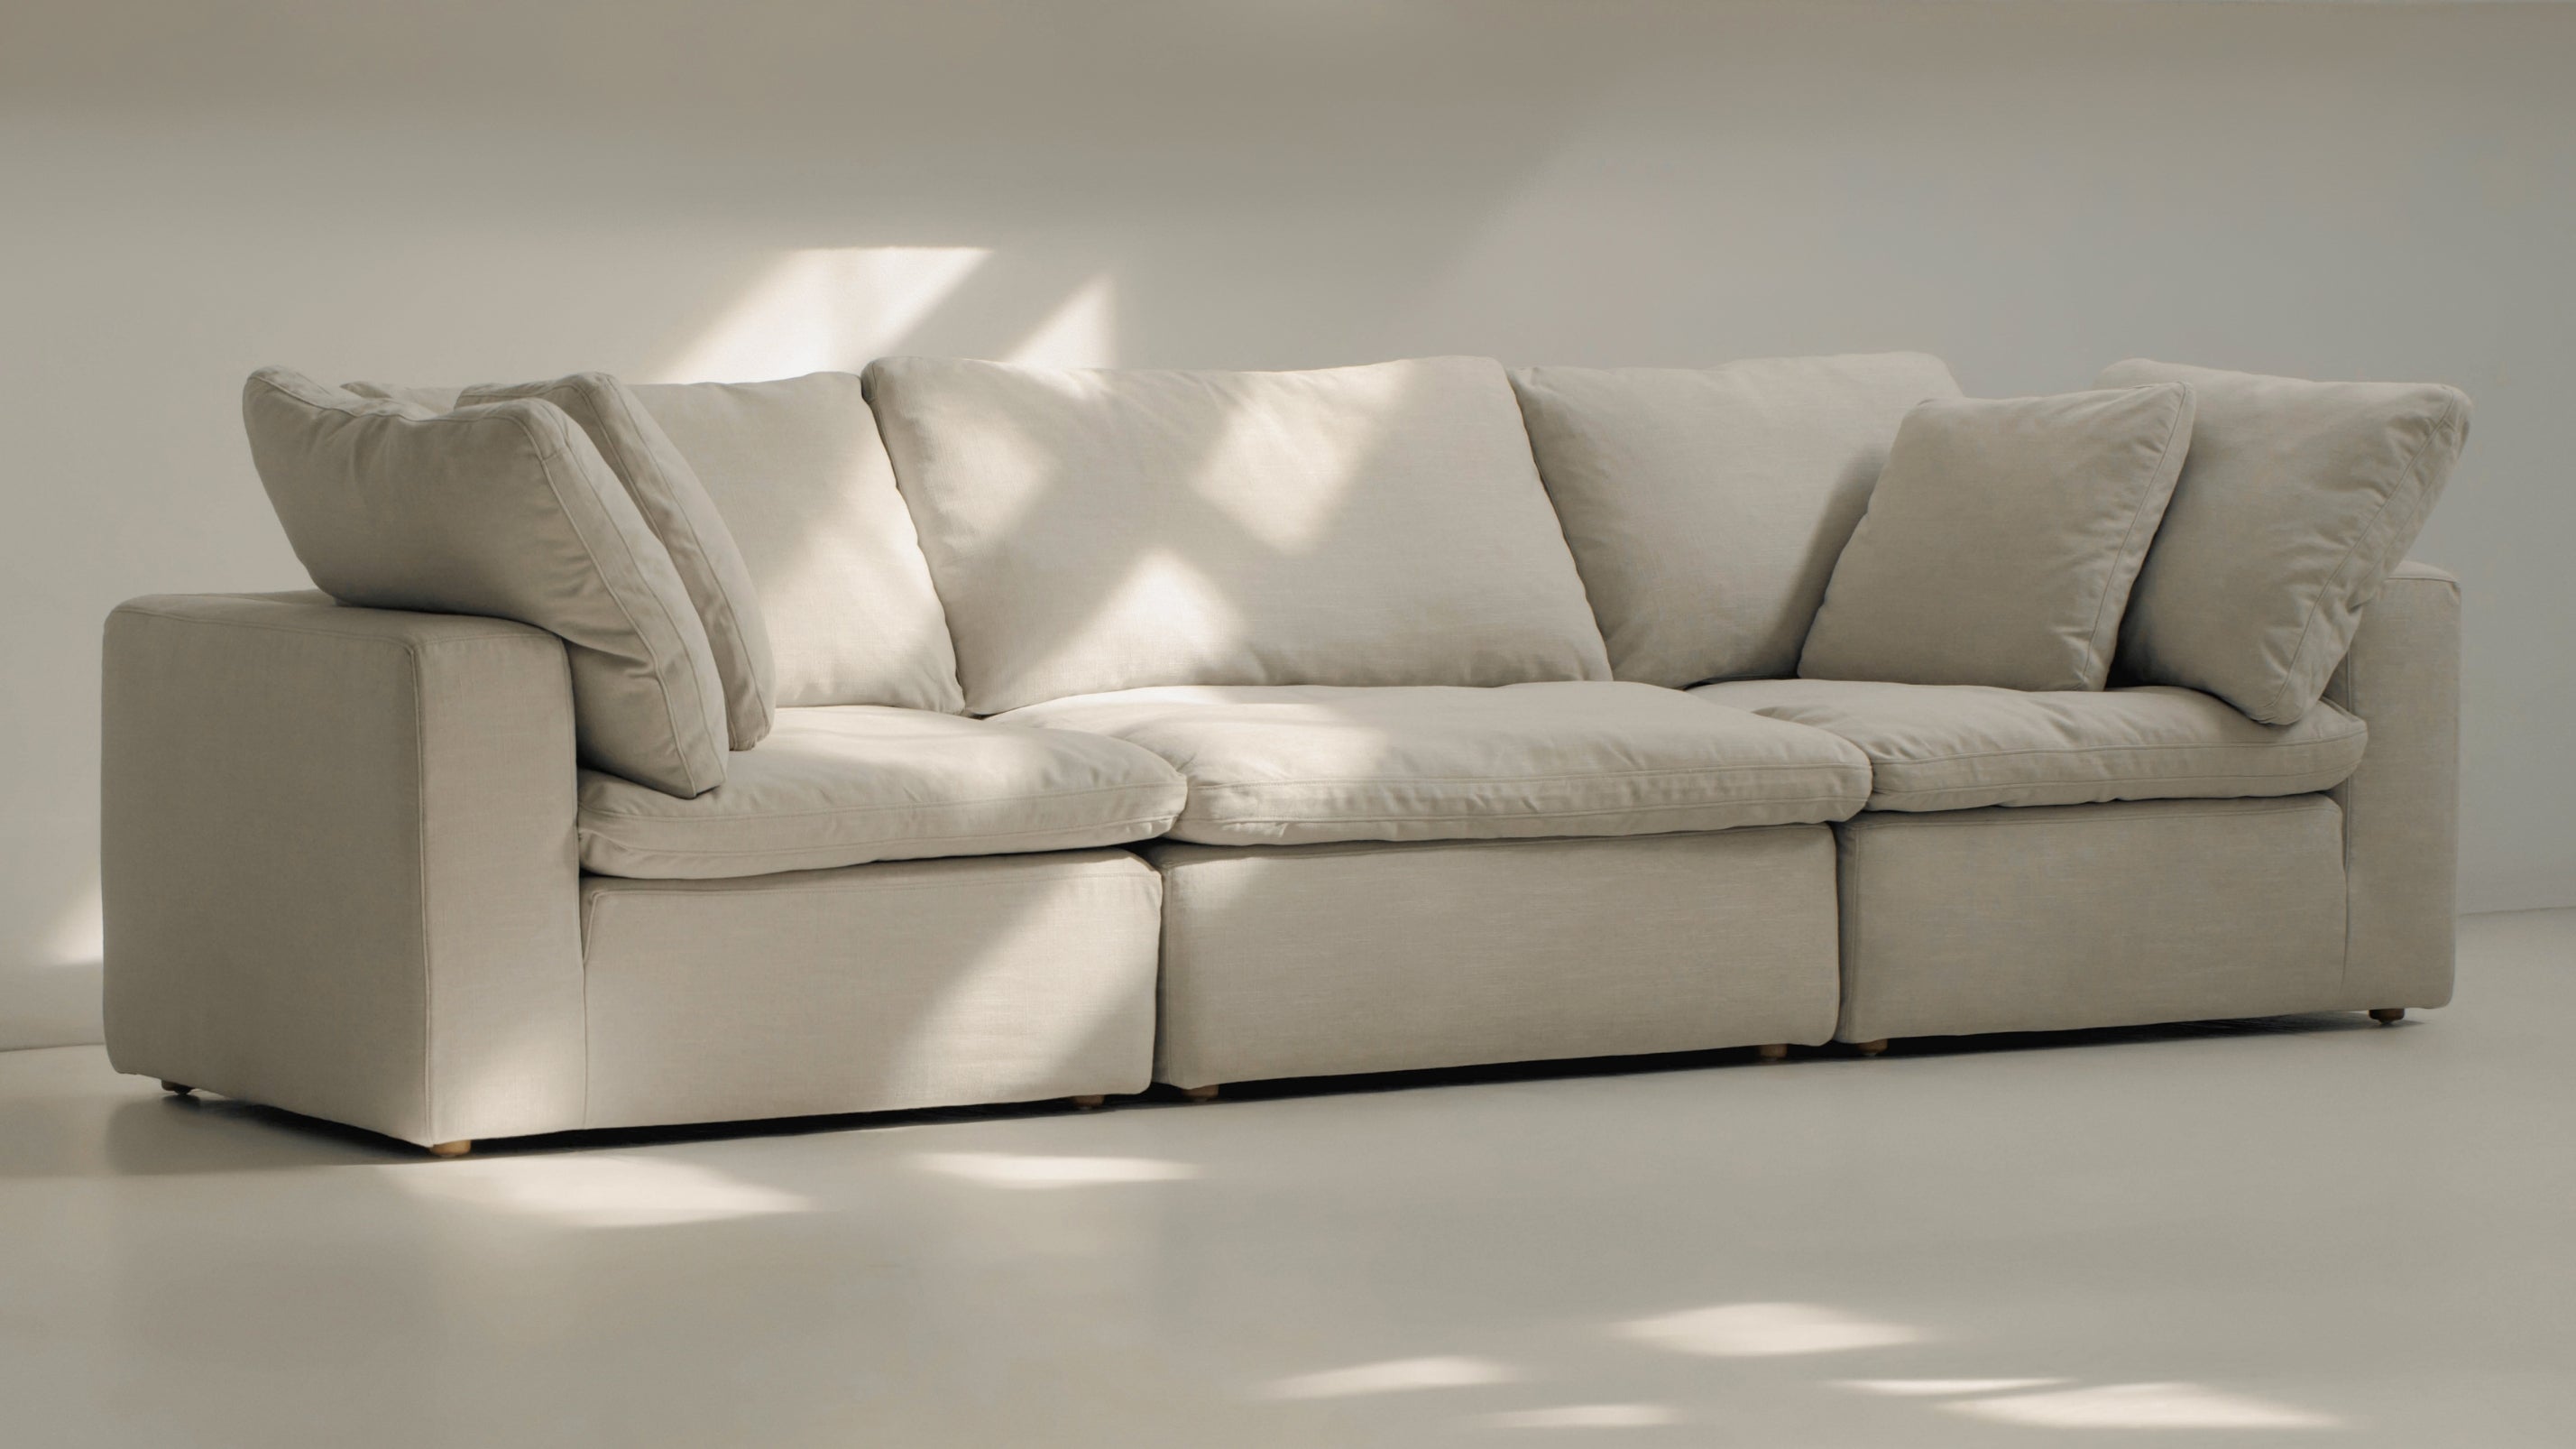 Movie Night™ 3-Piece Modular Sofa, Large, Clay - Image 3